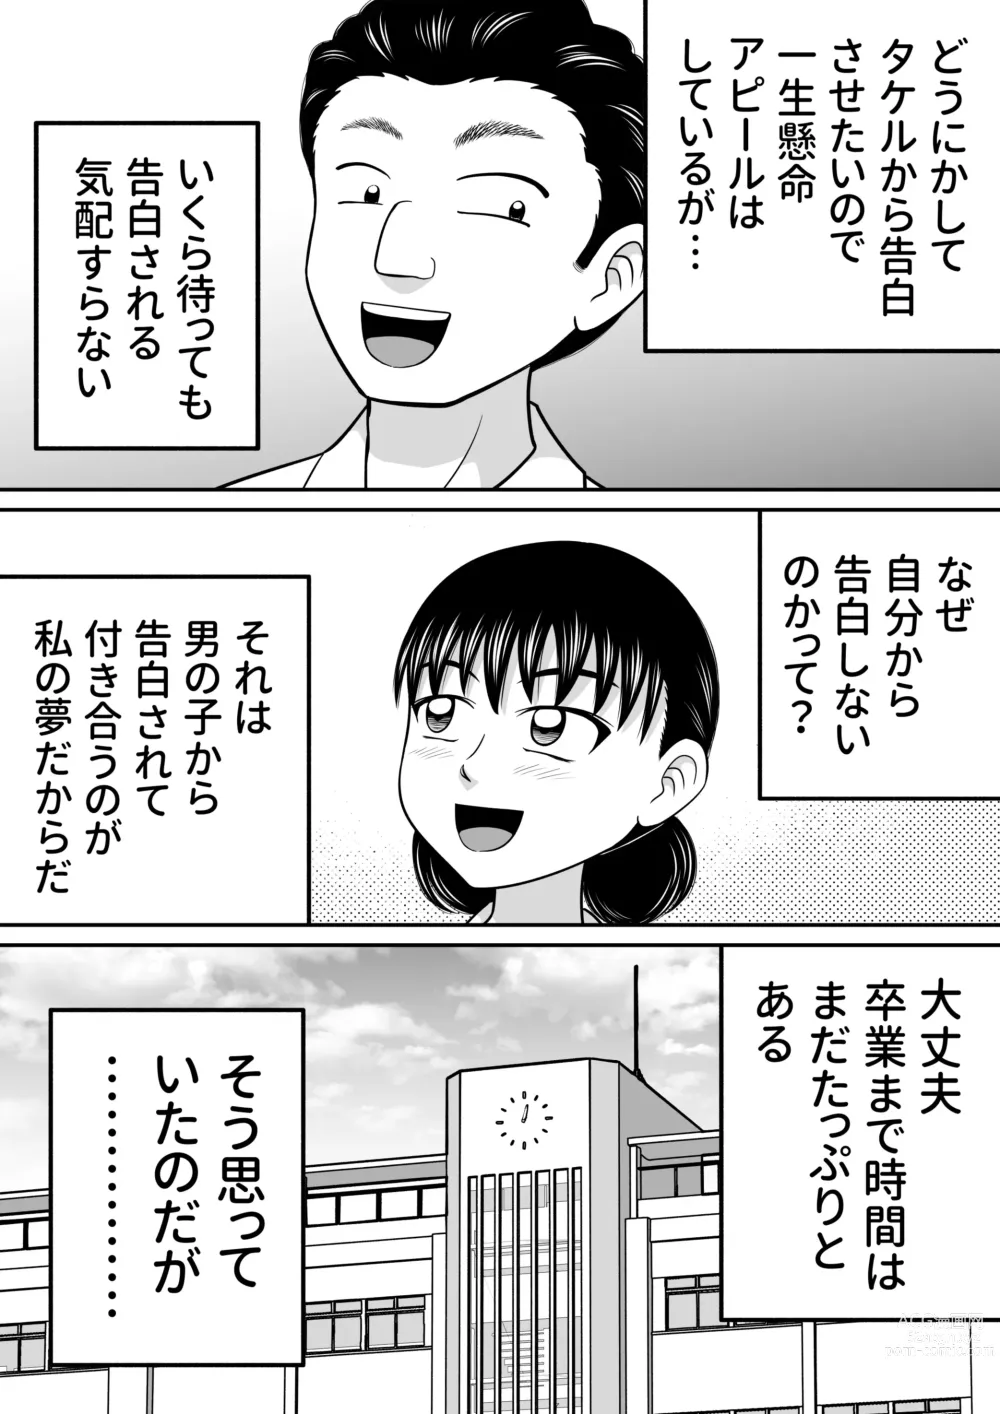 Page 3 of doujinshi Zenra Shoujo 2